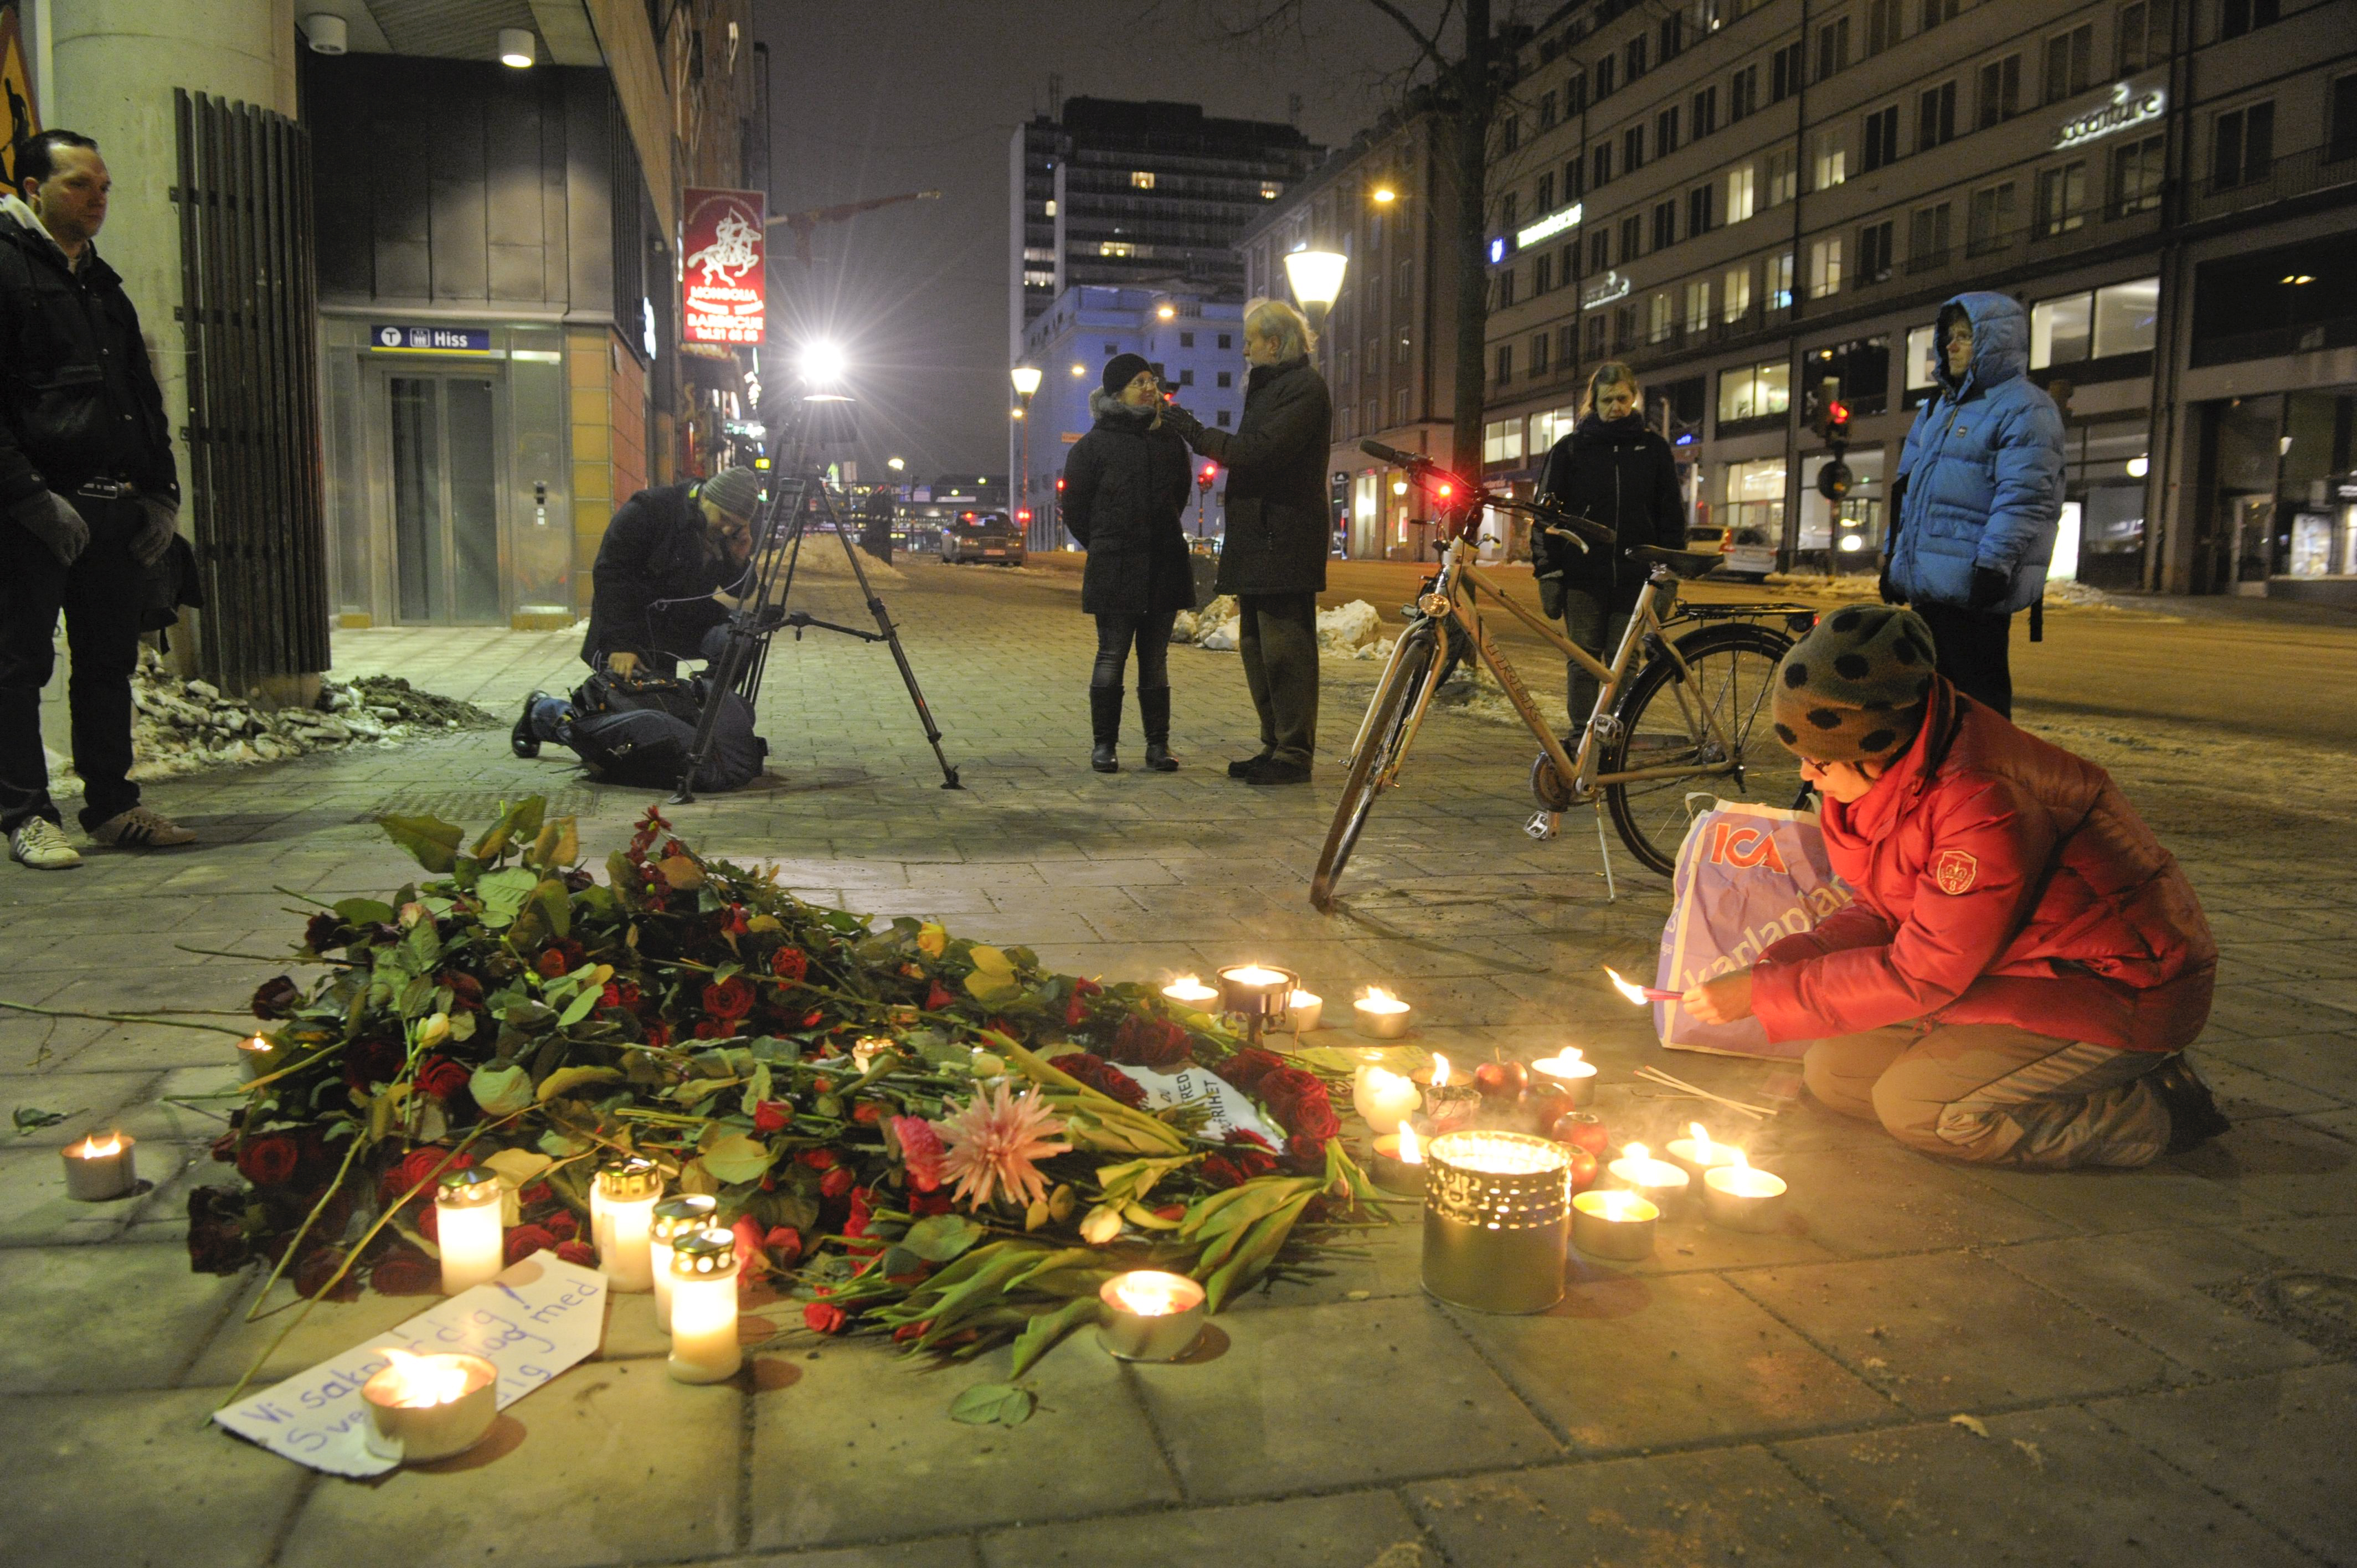 Blommoch och värmeljus vid den plats där statsminister Olof Palme mördades på Sveavägen i Stockholm. Bilden är från den 28 februari 2012, på dagen 25 år efter mordet.